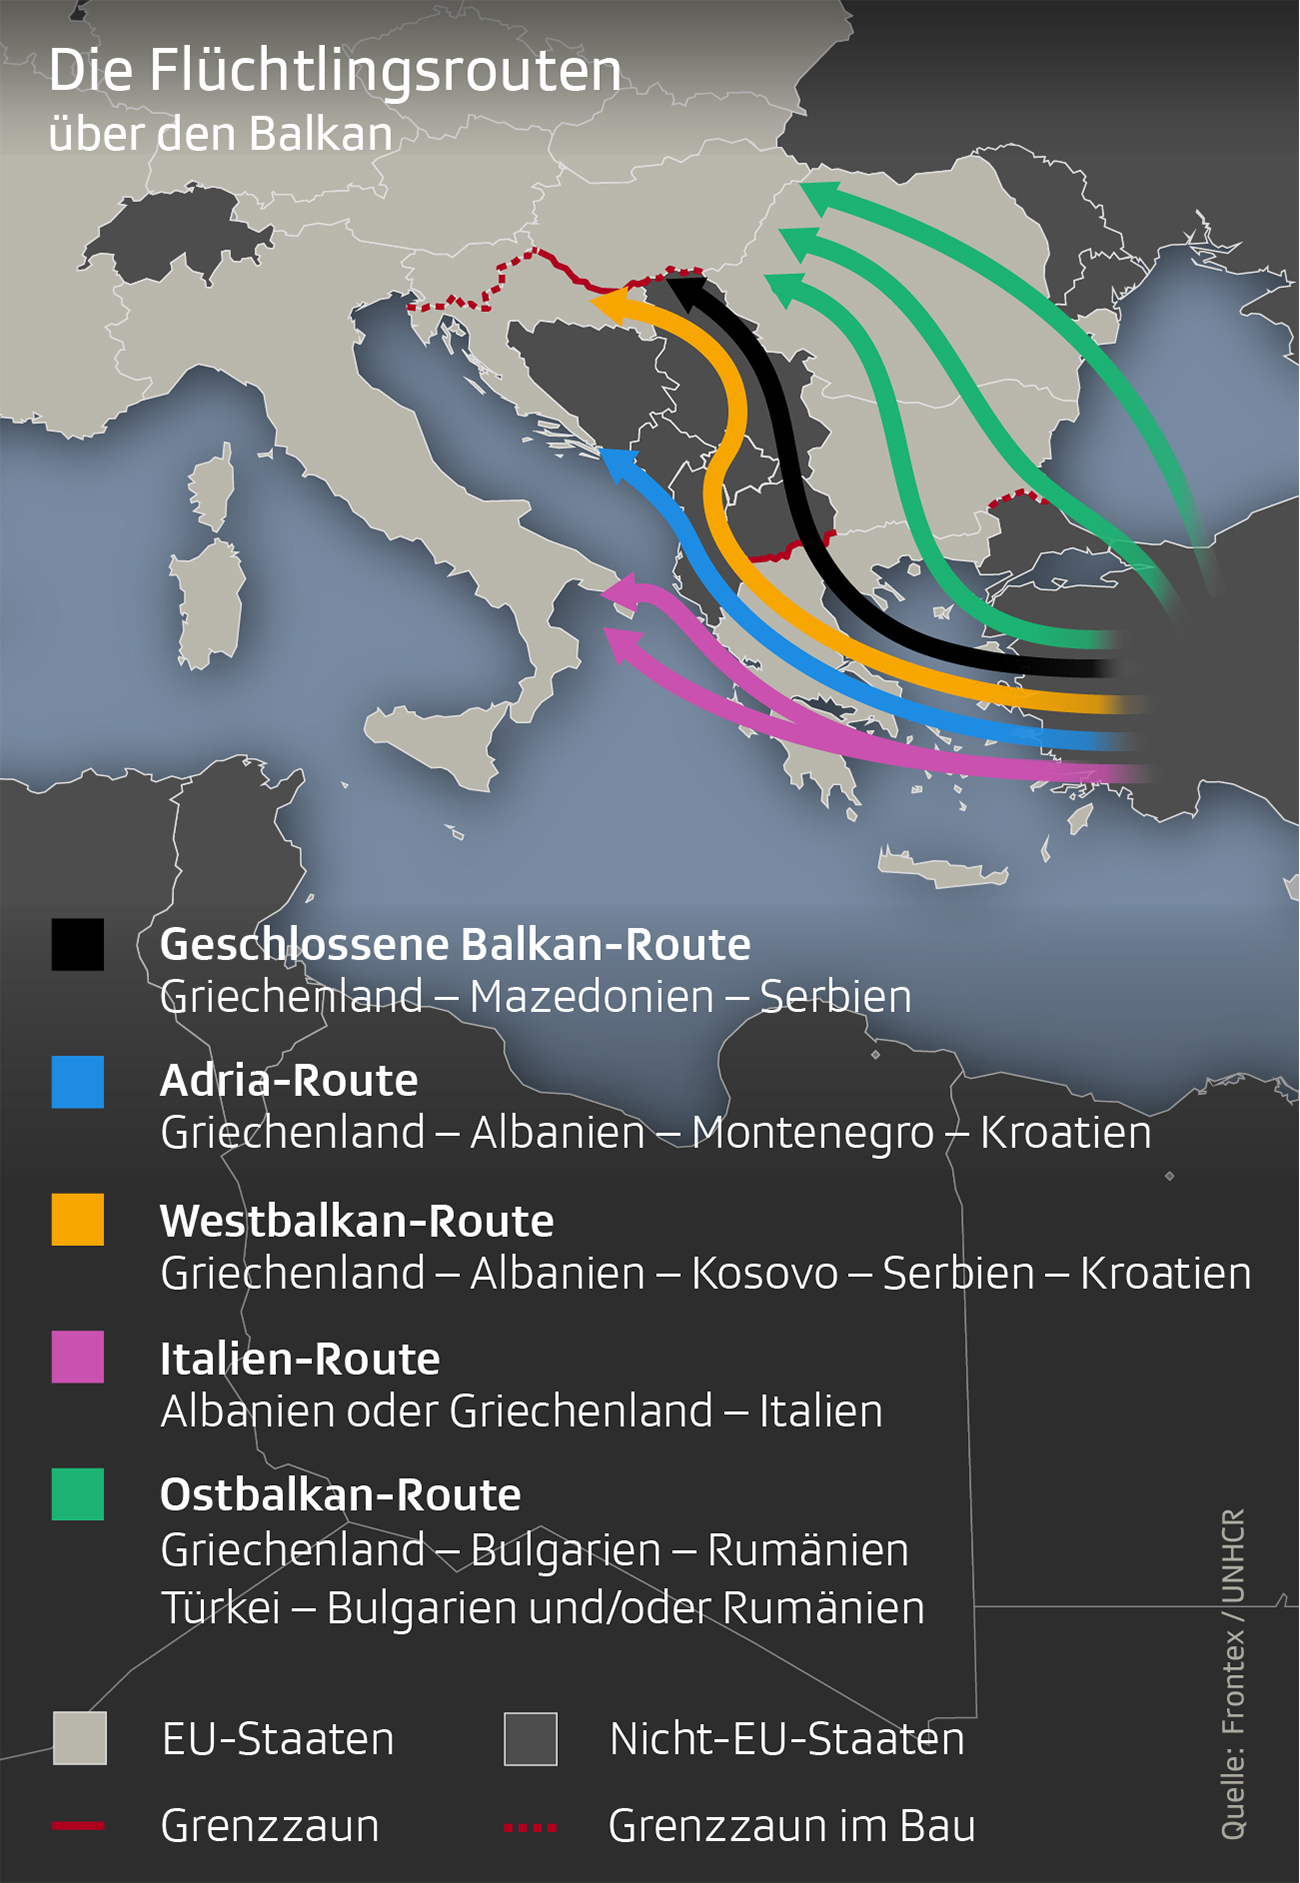 Karte zeigt den Balkan mit den Flüchtlingsrouten